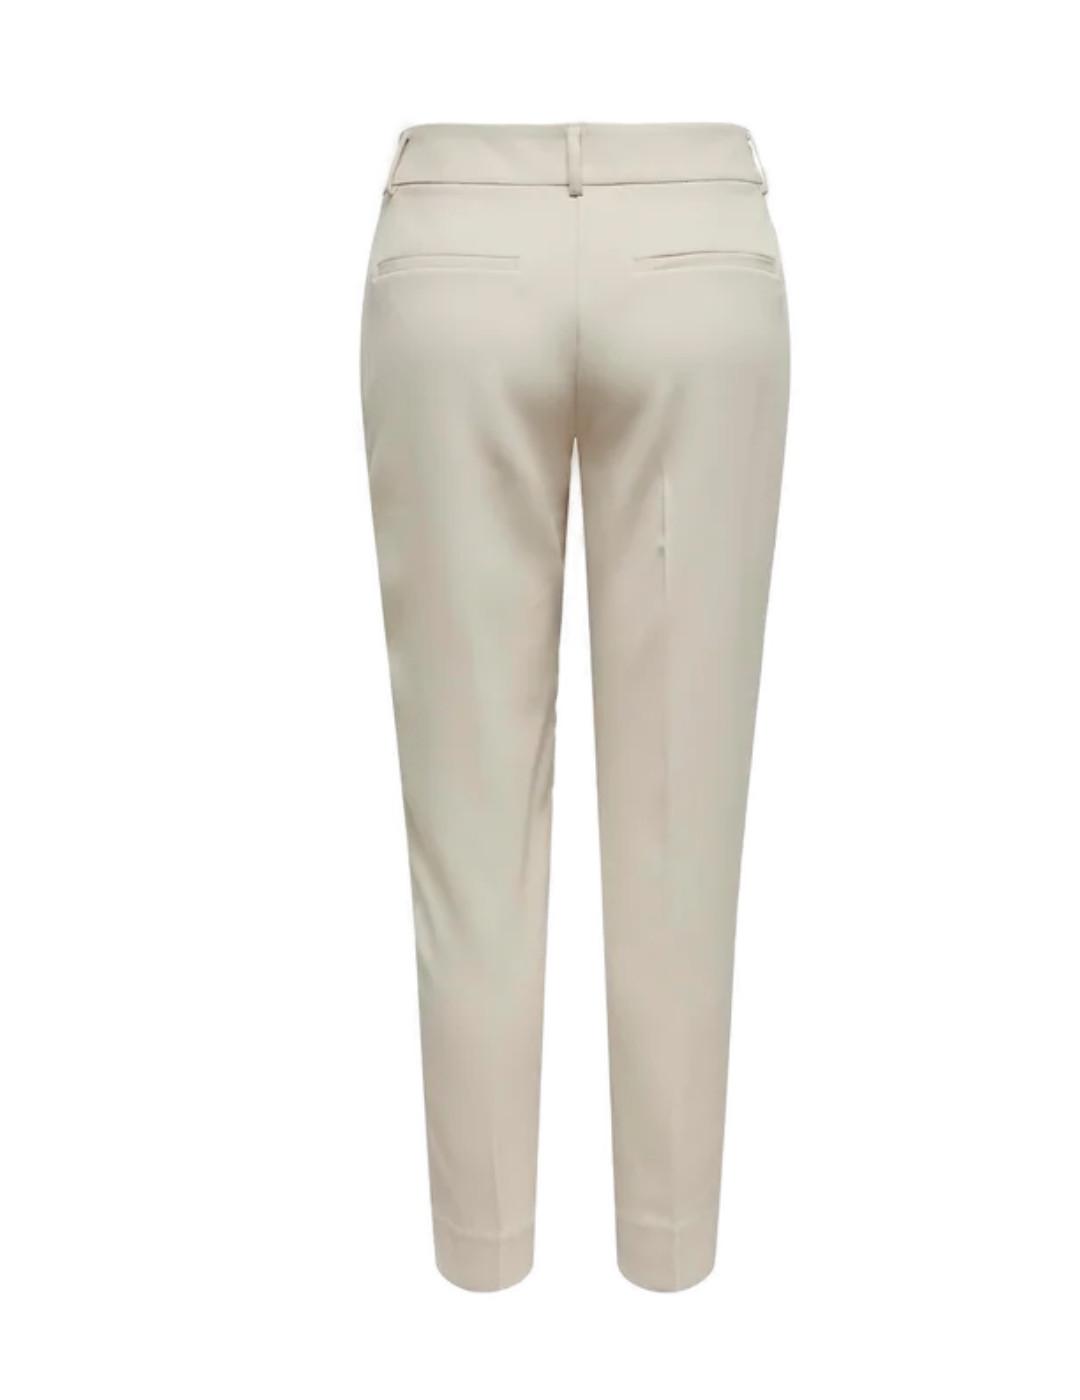 Pantalón Only Veronica color beige corte clásico para mujer